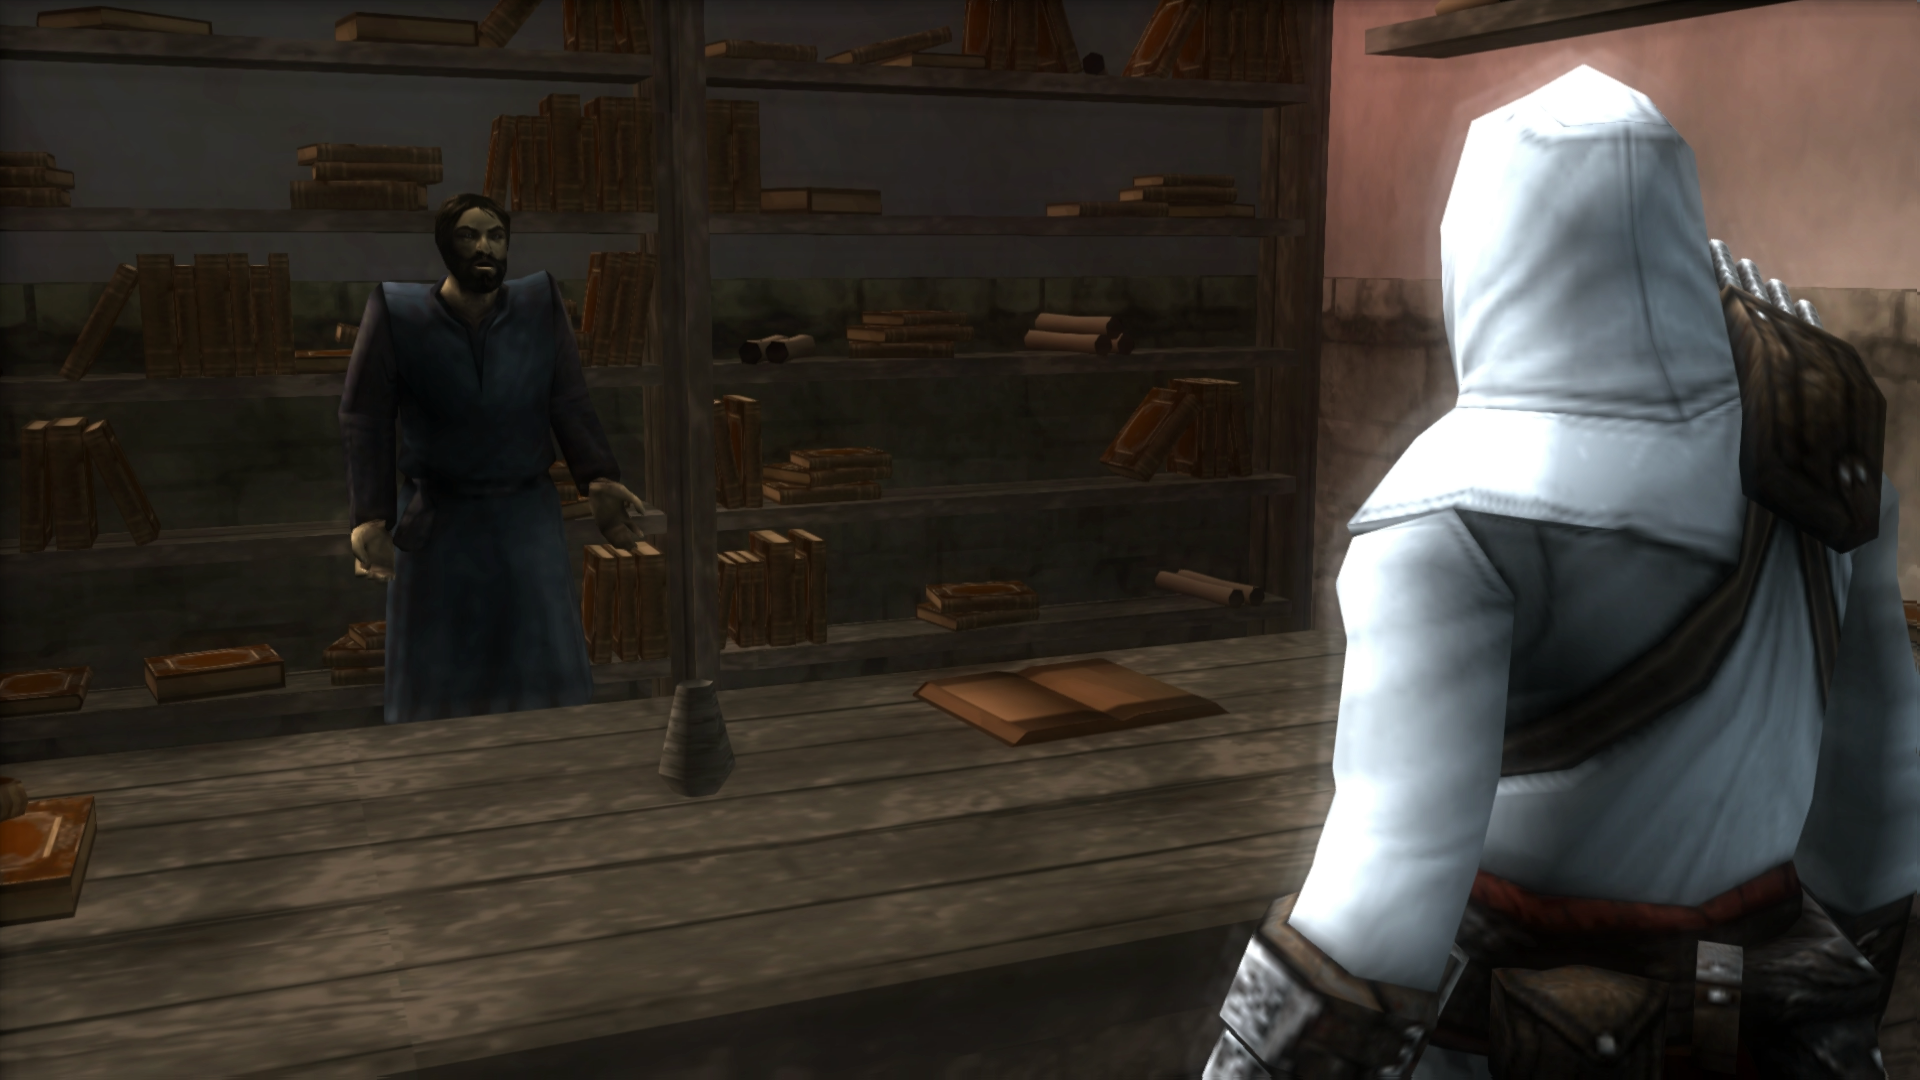 Assassin's Creed Walkthrough Part 1 - Altaïr Ibn-La'Ahad (PC Let's